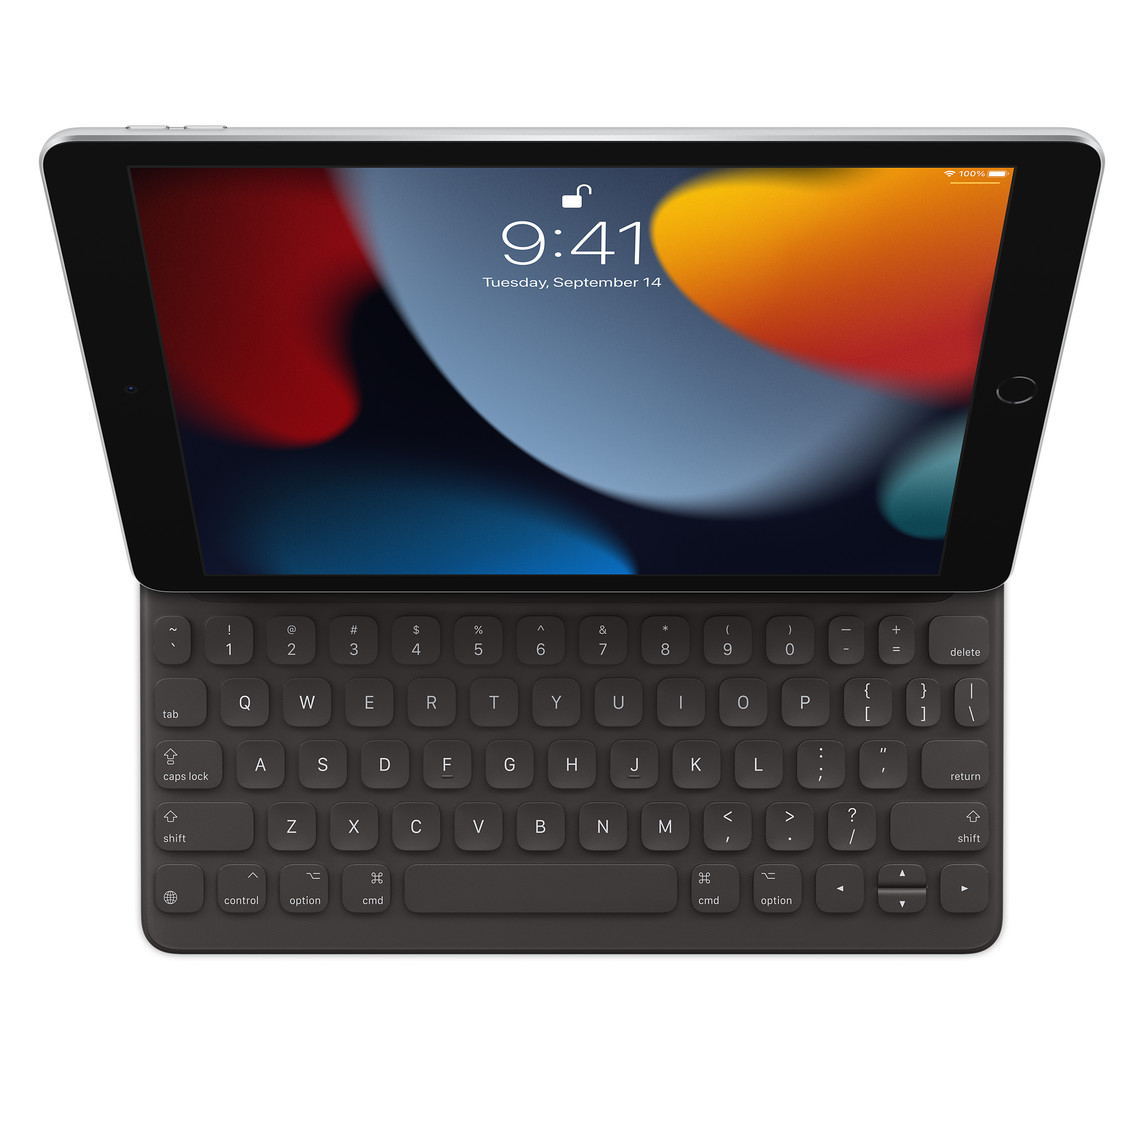 Smart Keyboard till iPad (nionde generationen) anslutet till iPad, sett ovanifrån.